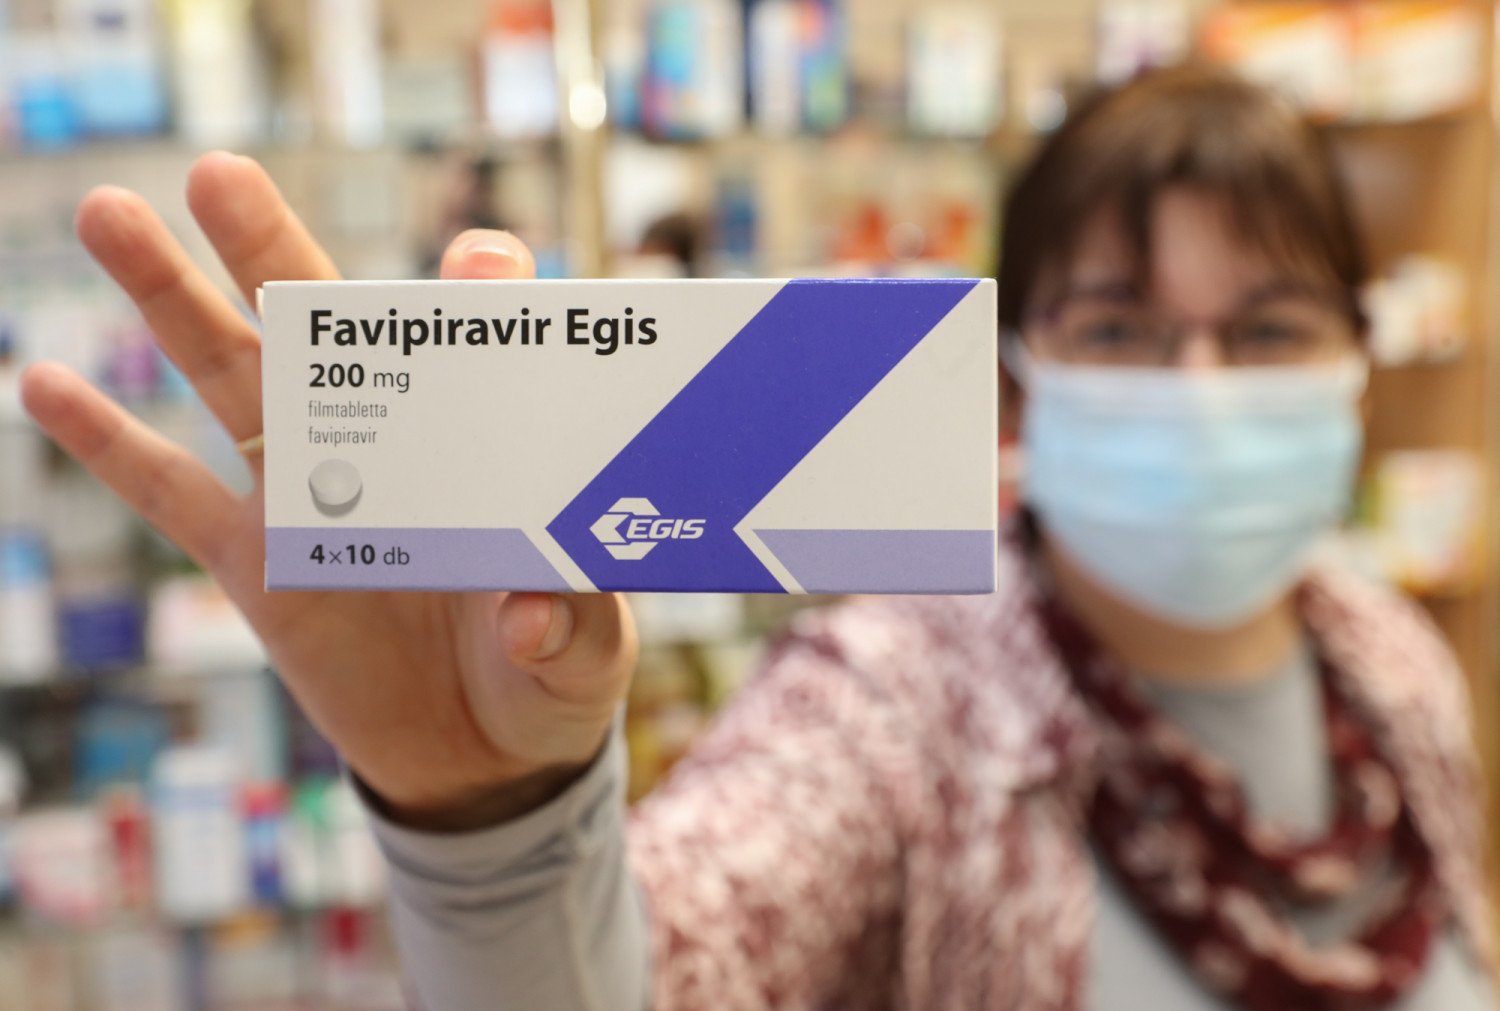 Hungary cho phép bệnh nhân dùng tại gia “biệt dược” Favipiravir (do hãng Egis của nước này bào chế) để chữa trị Covid-19 với sự chỉ định của bác sĩ - thuốc được cung cấp miễn phí - Ảnh: origo.hu